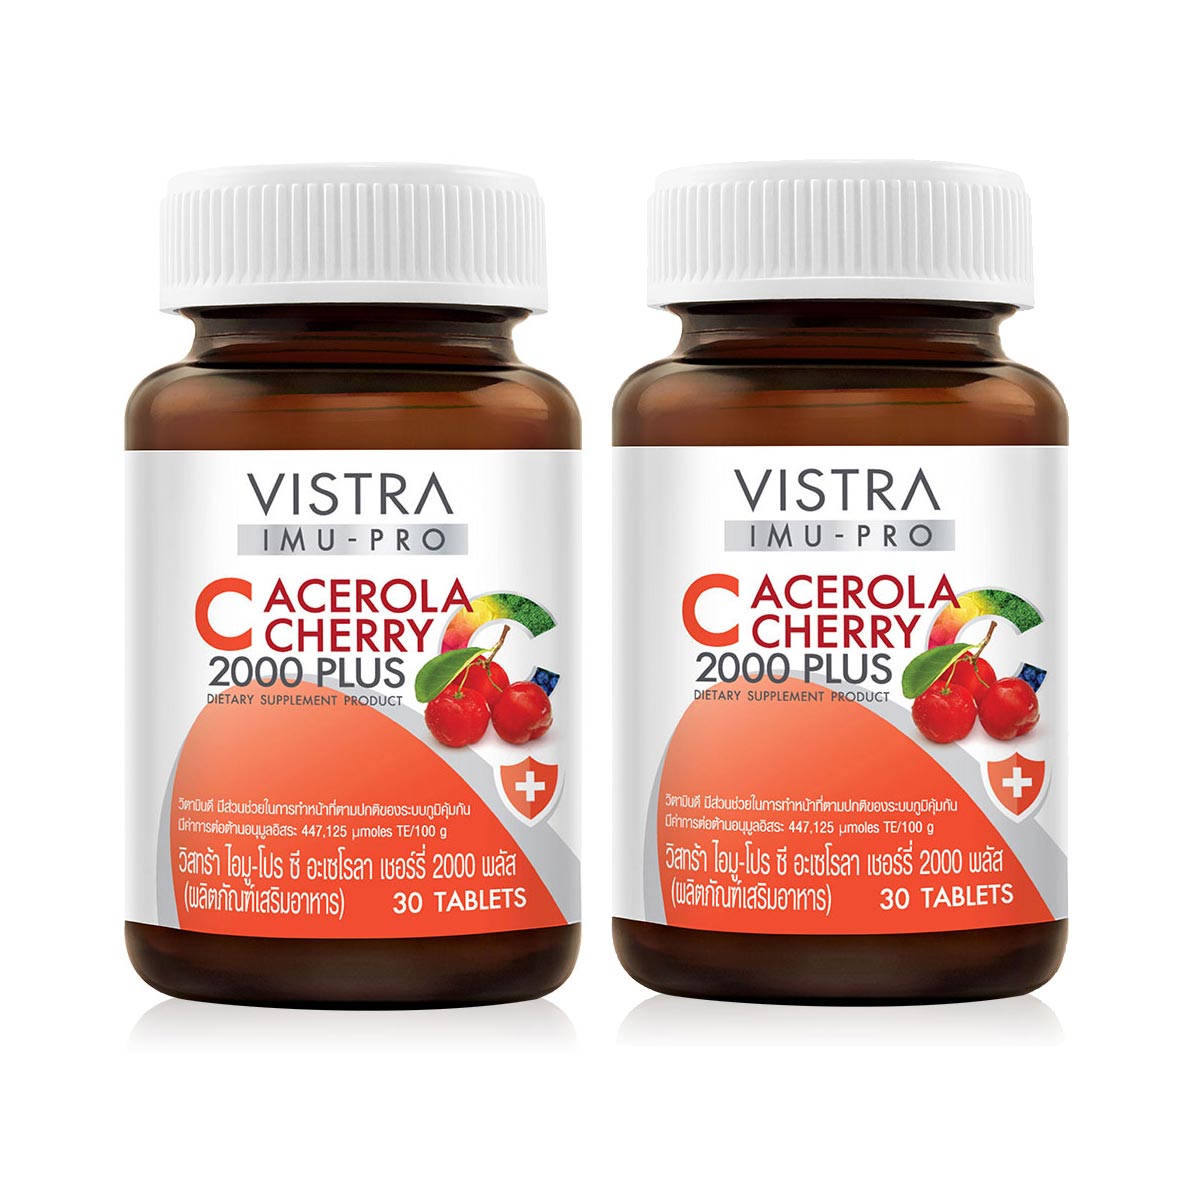 Пищевая добавка Vistra IMU-PRO C Acerola Cherry 2000 Plus, 2 банки по 30 капсул